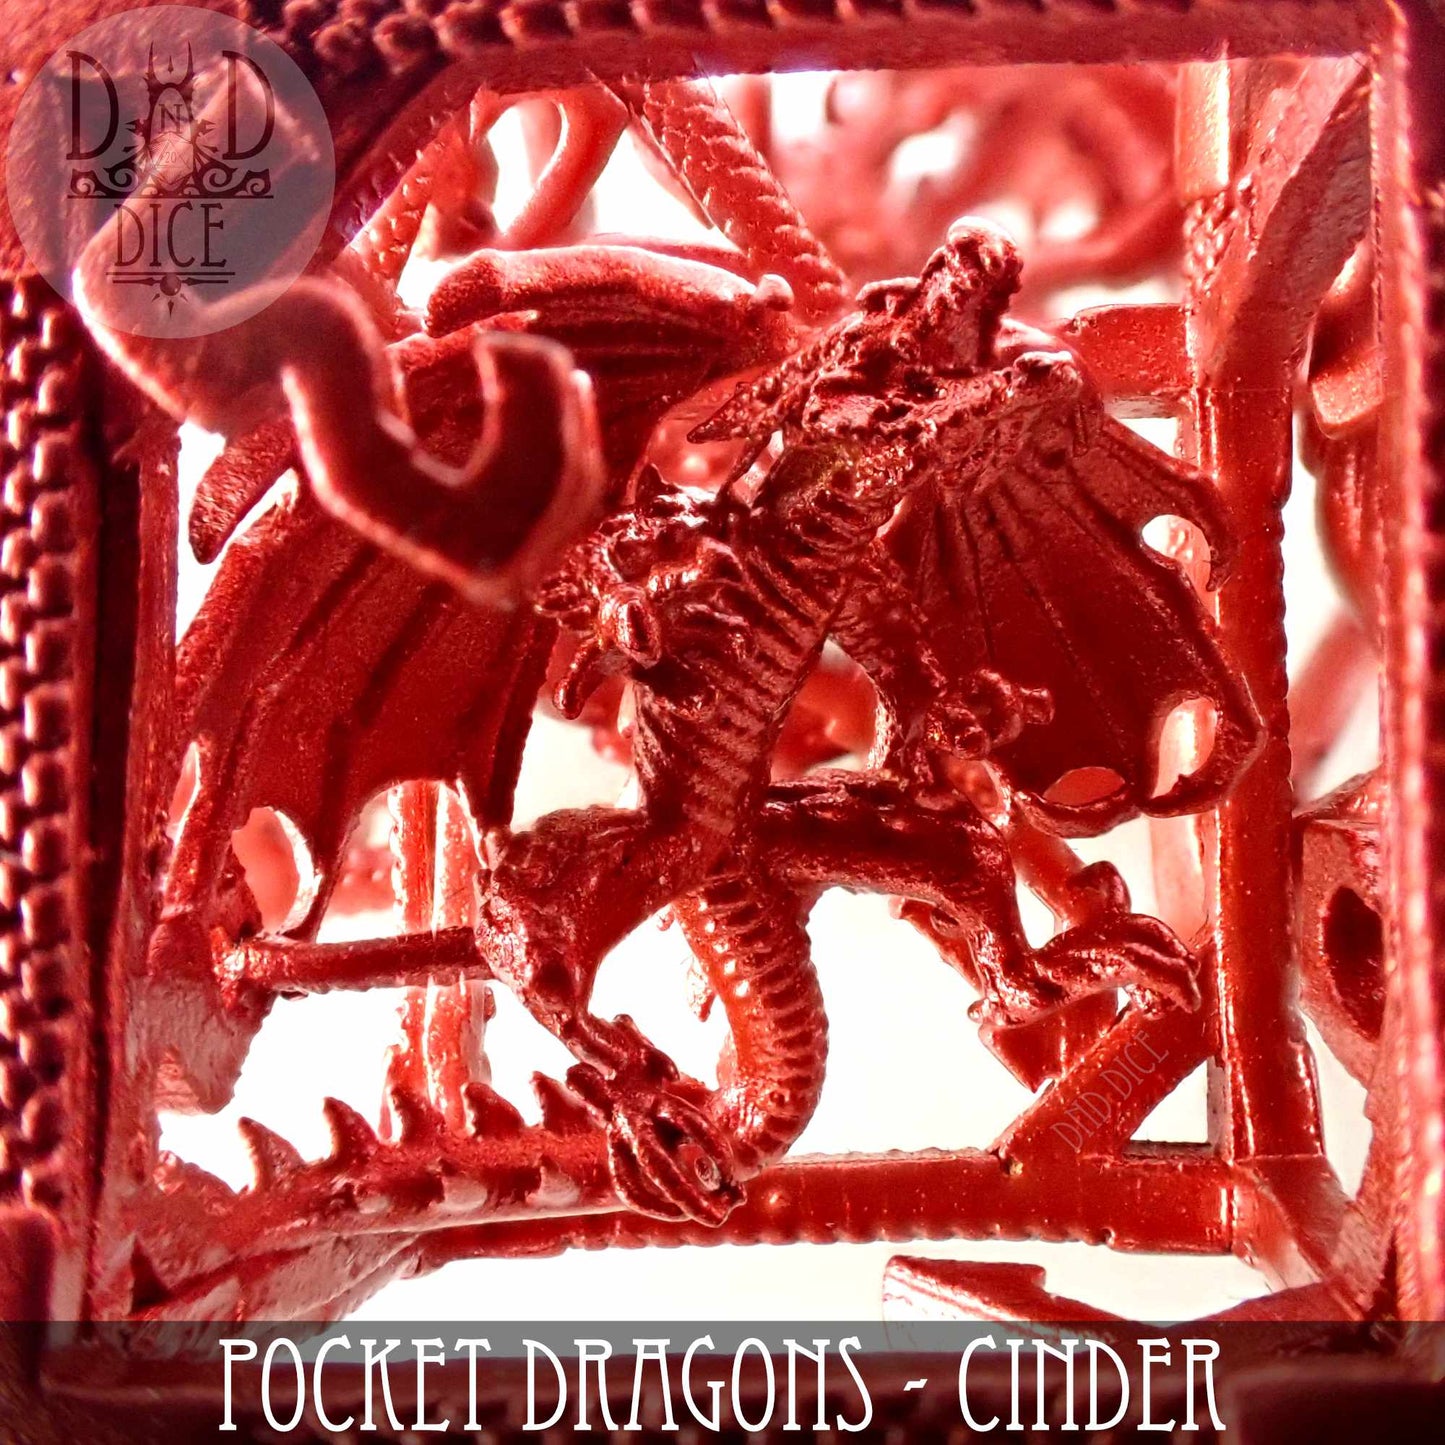 Pocket Dragons Cinder - Juego de dados de metal (caja de regalo)